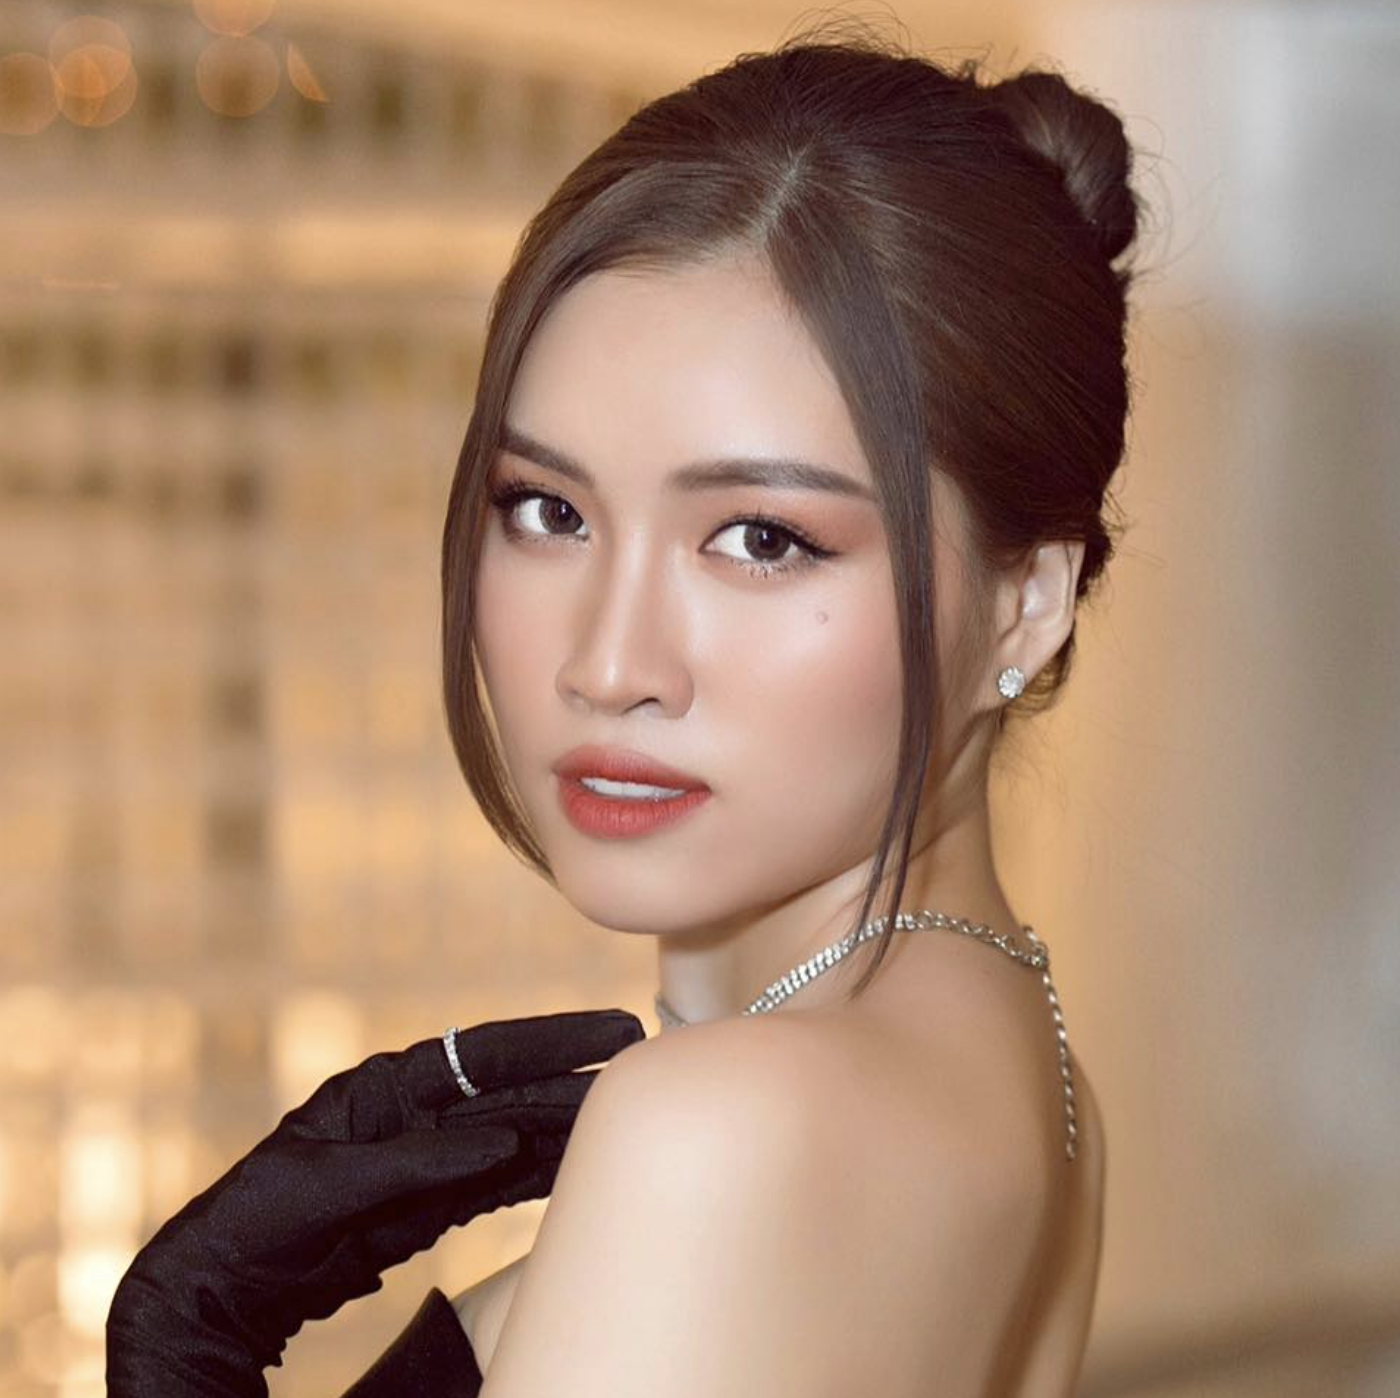 Khi thi Hoa hậu không 'lên đời' mà gặp 'tam tai': Lộ nhan sắc gây sốc rồi làm lộ cả kết quả show Hương Giang - ảnh 1